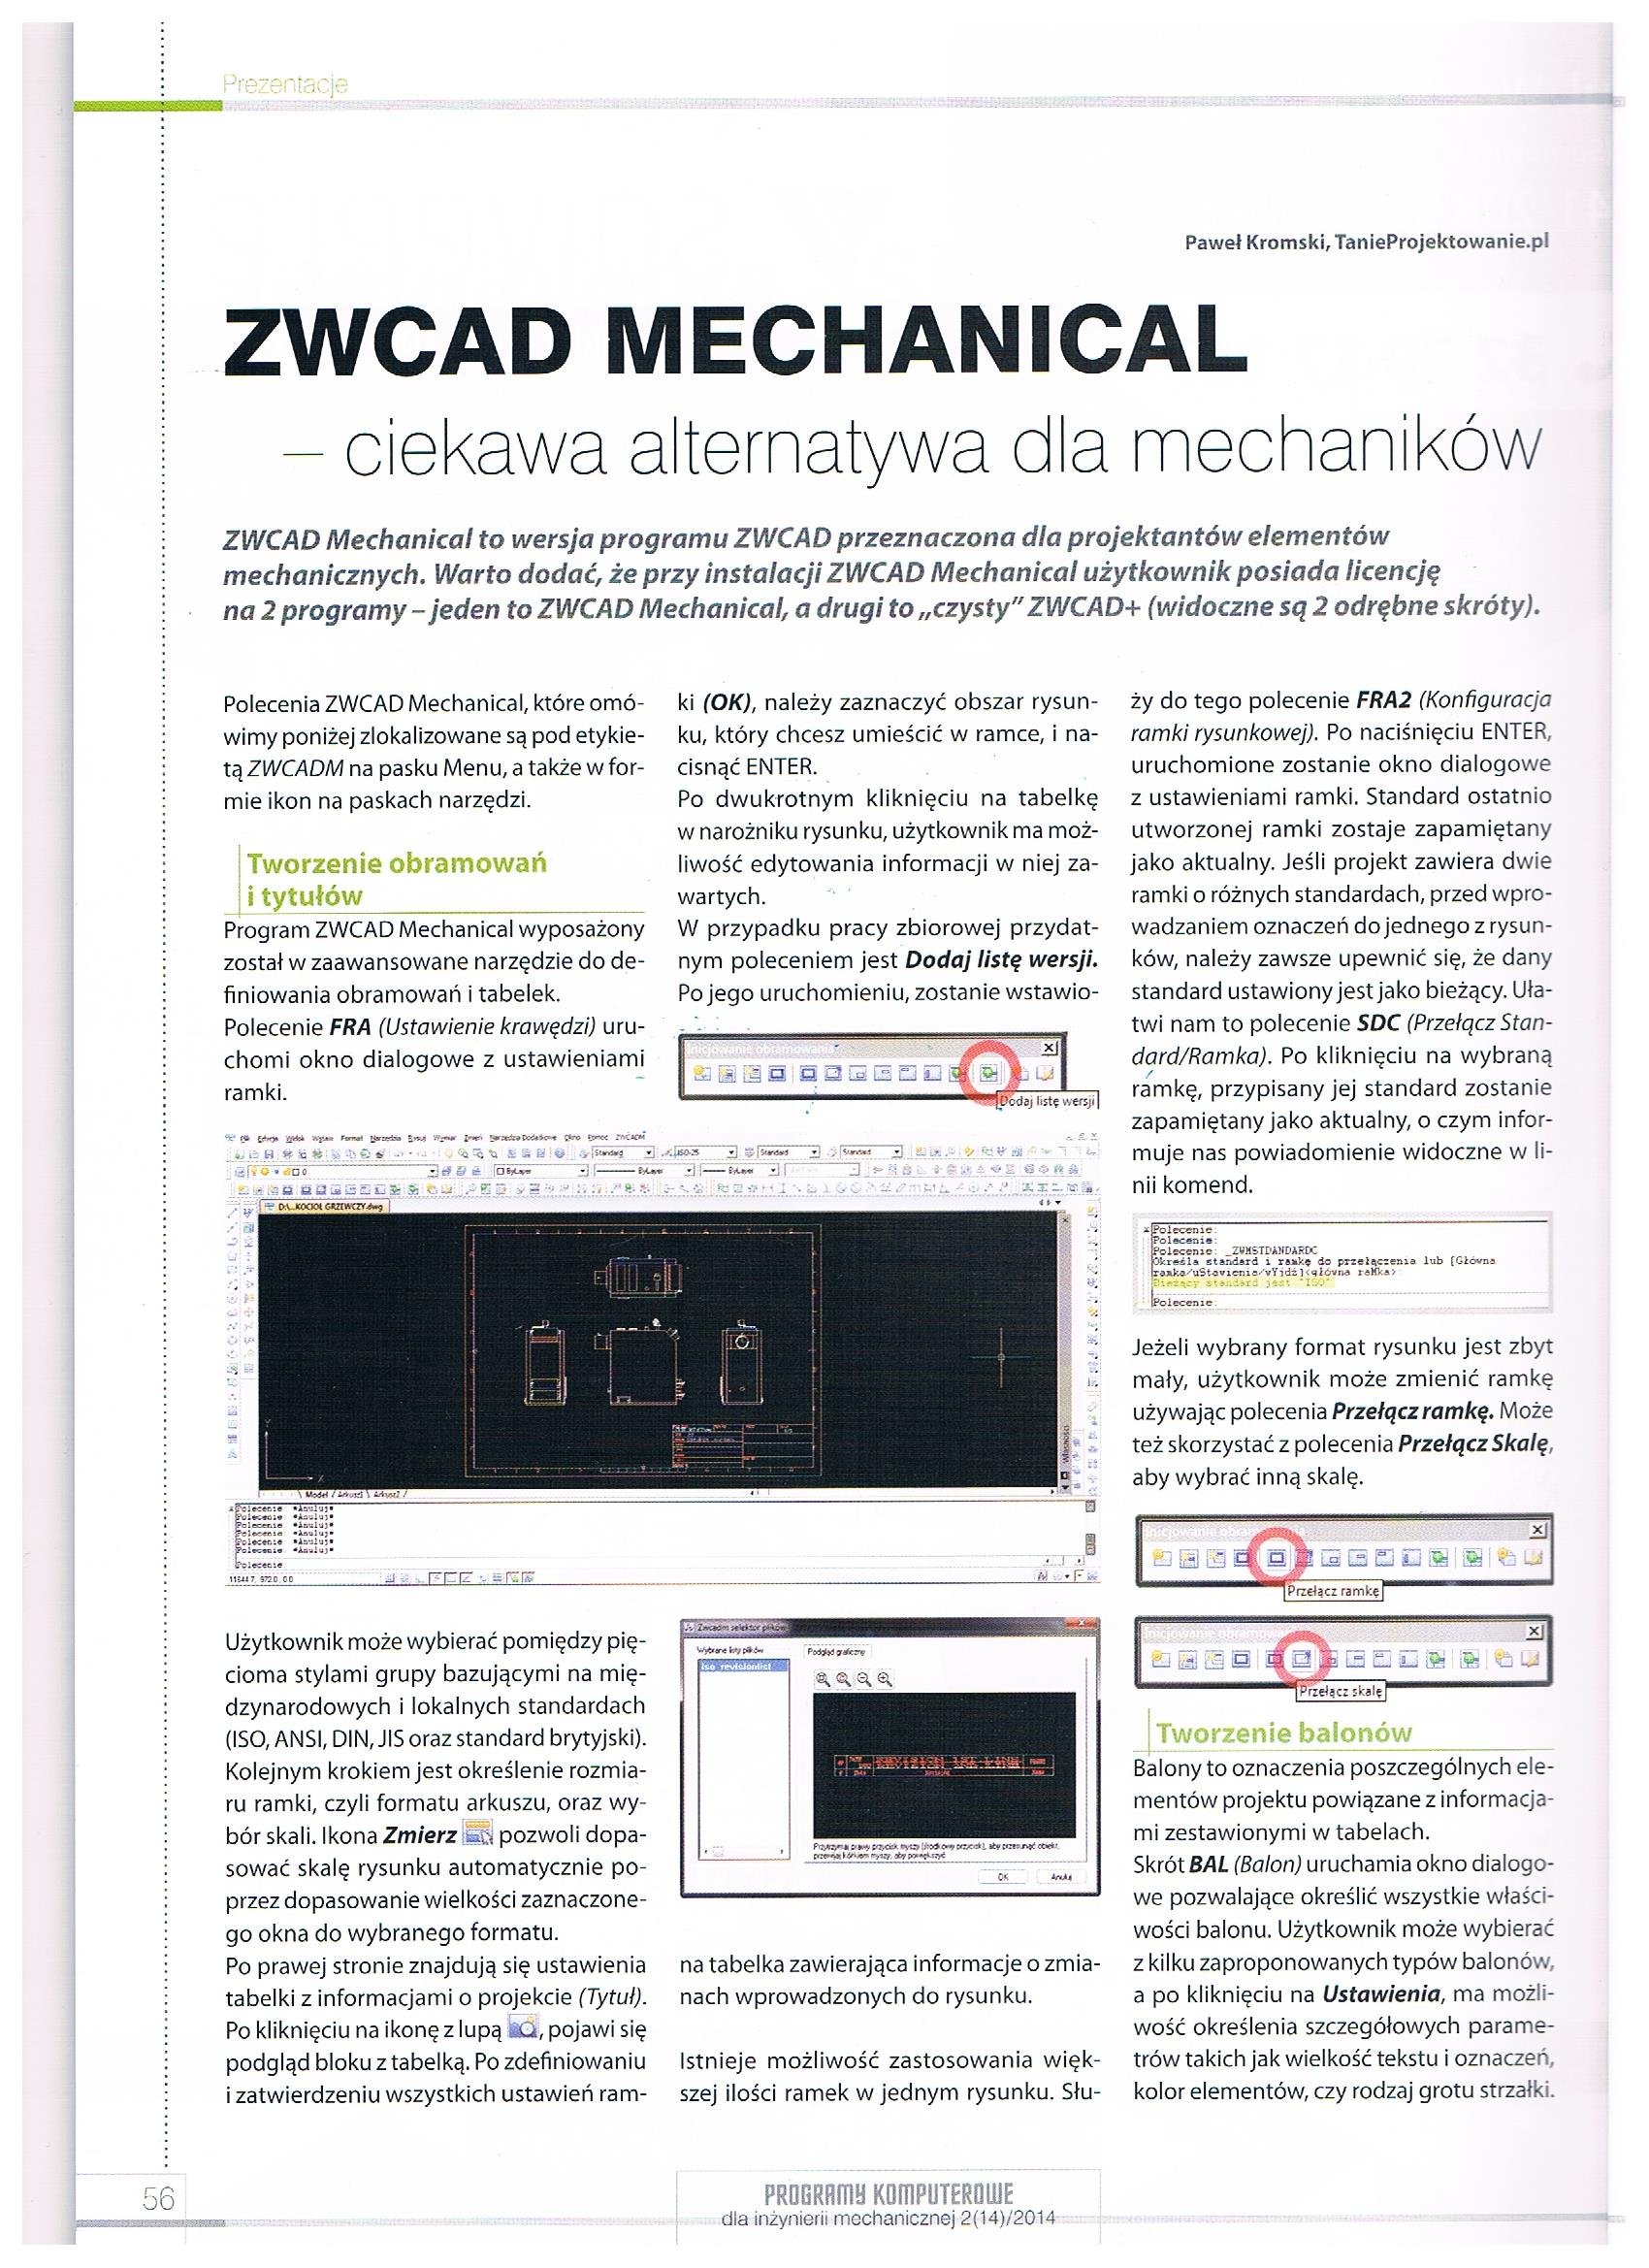 Programy komputerowe dla inzynierii mechanicznej 2-14-2014 str. 56